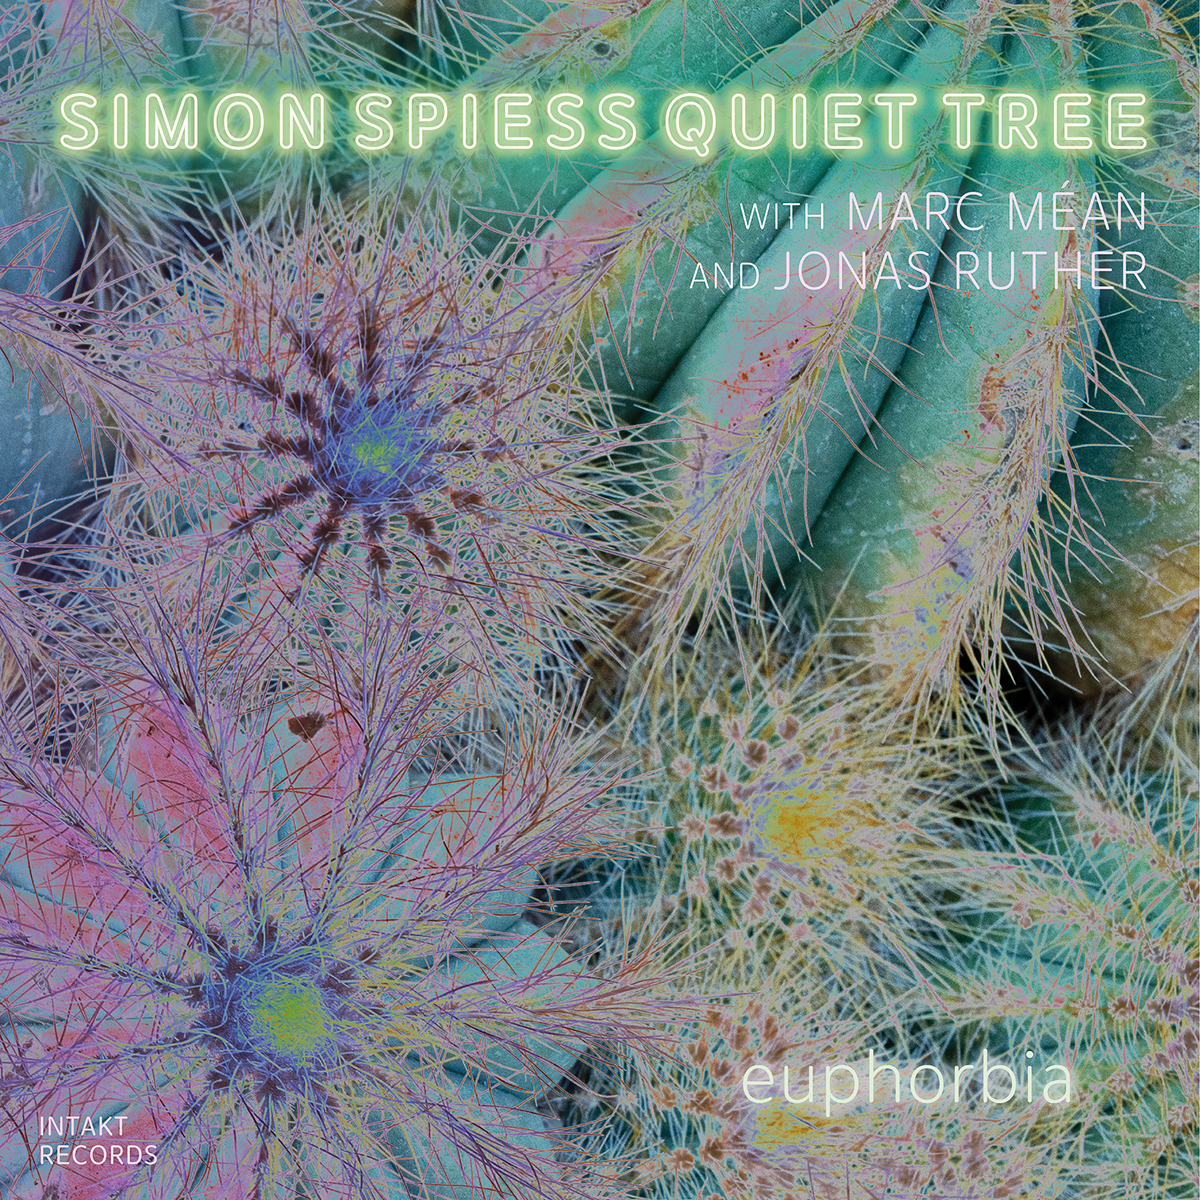 SIMON SPIESS QUIET TREE. EUPHORBIA Cover Intakt CD 414